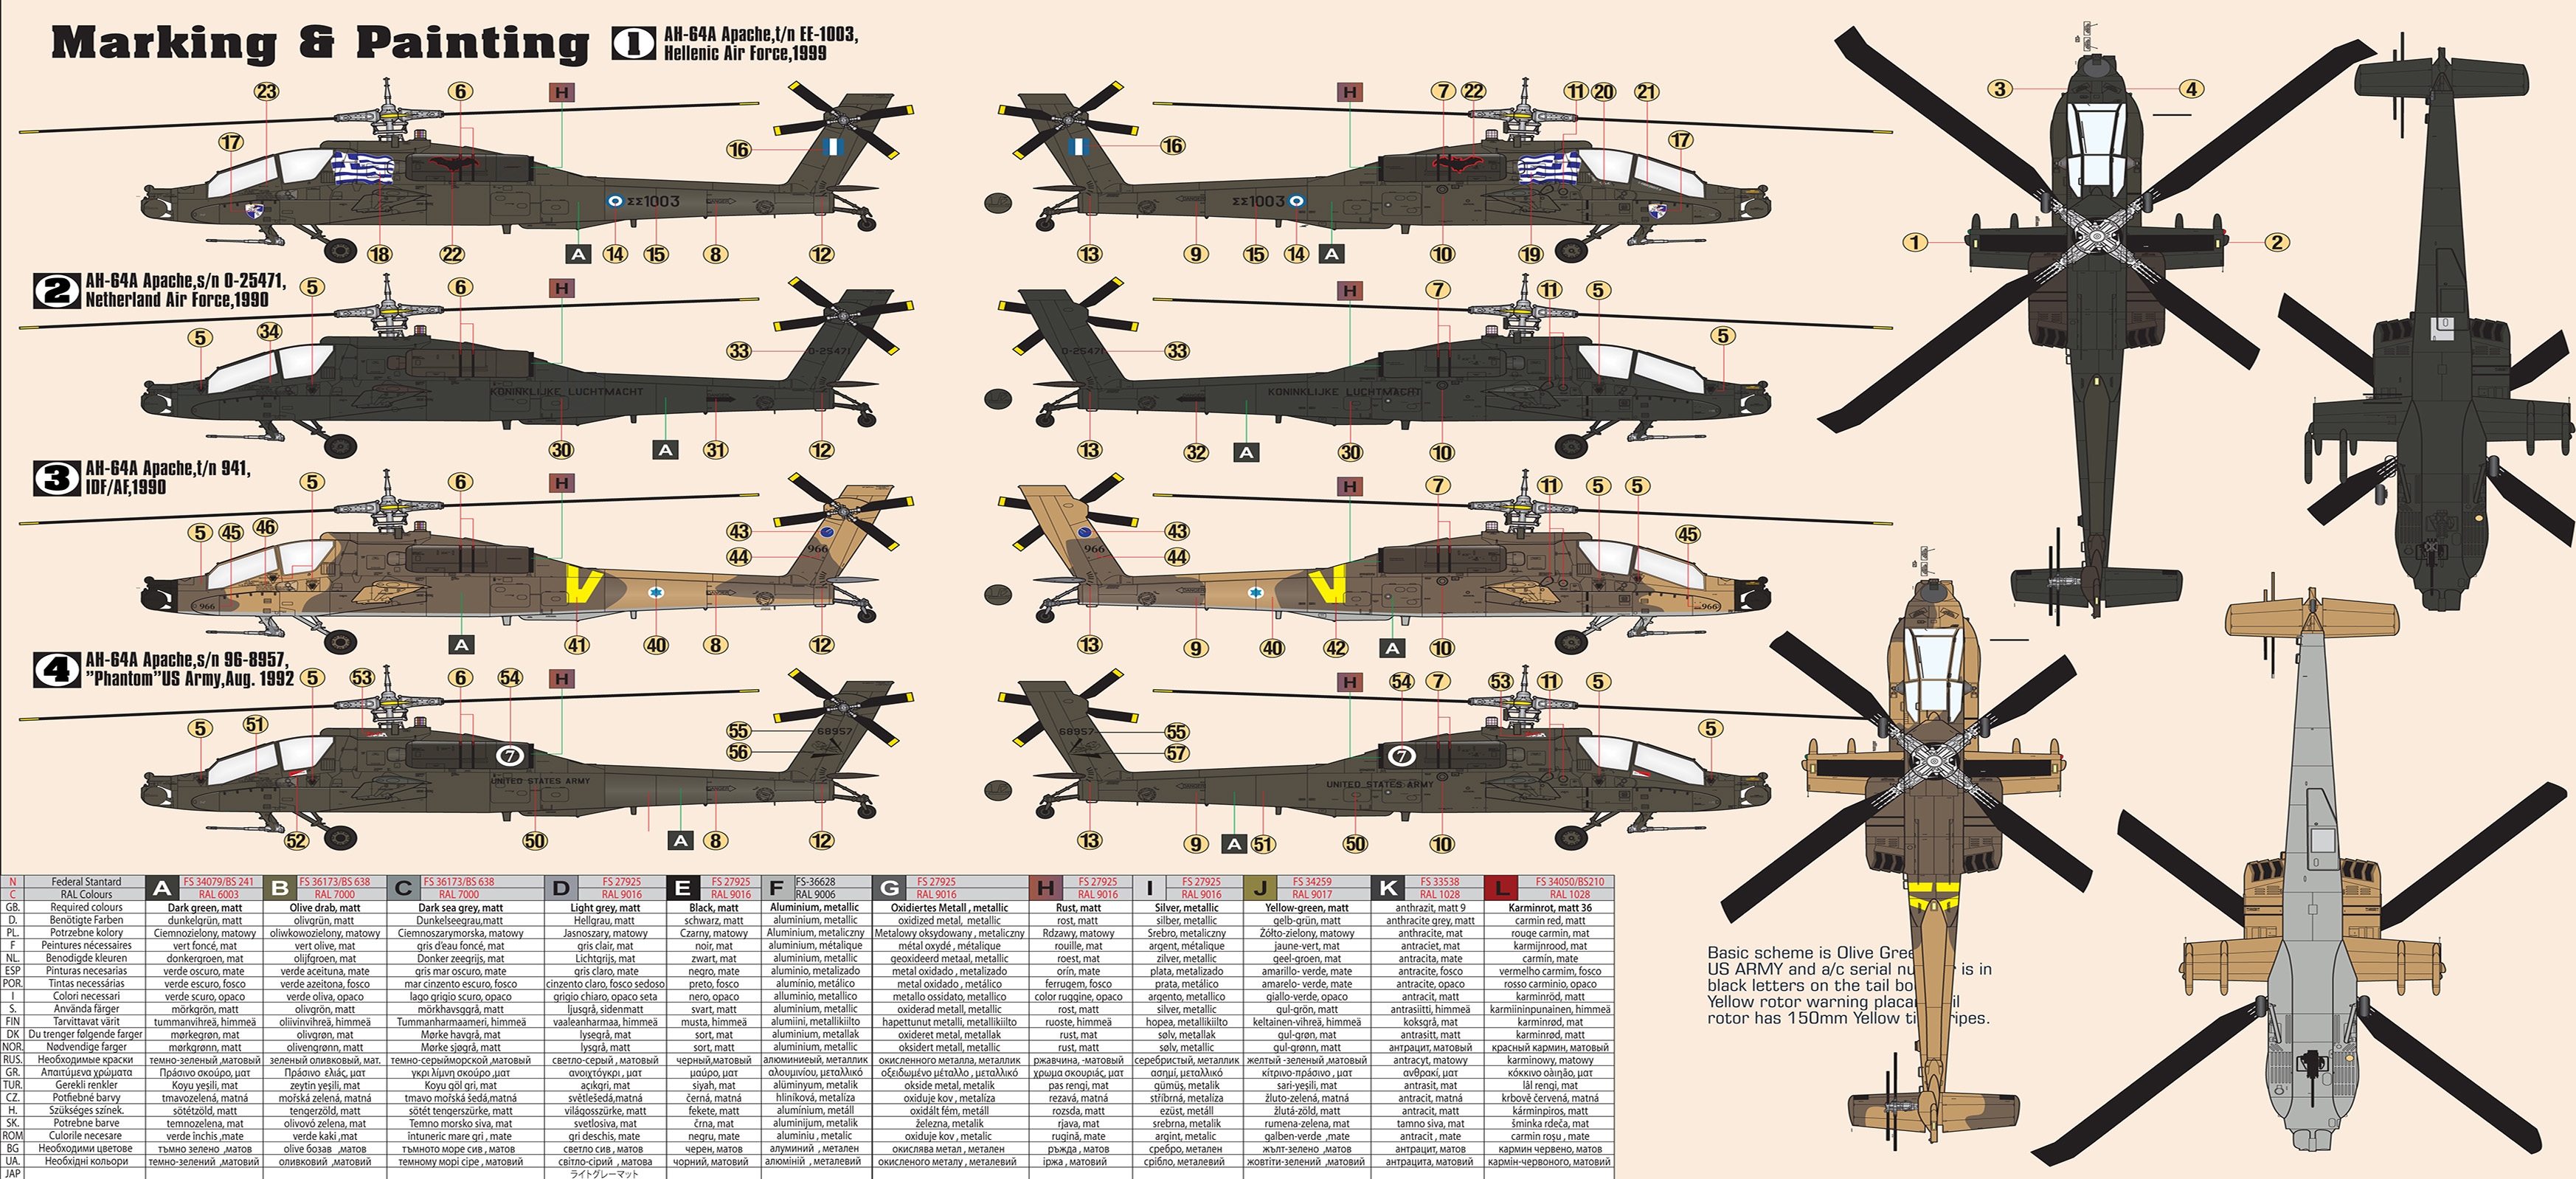 AH-64A Acropol Apache